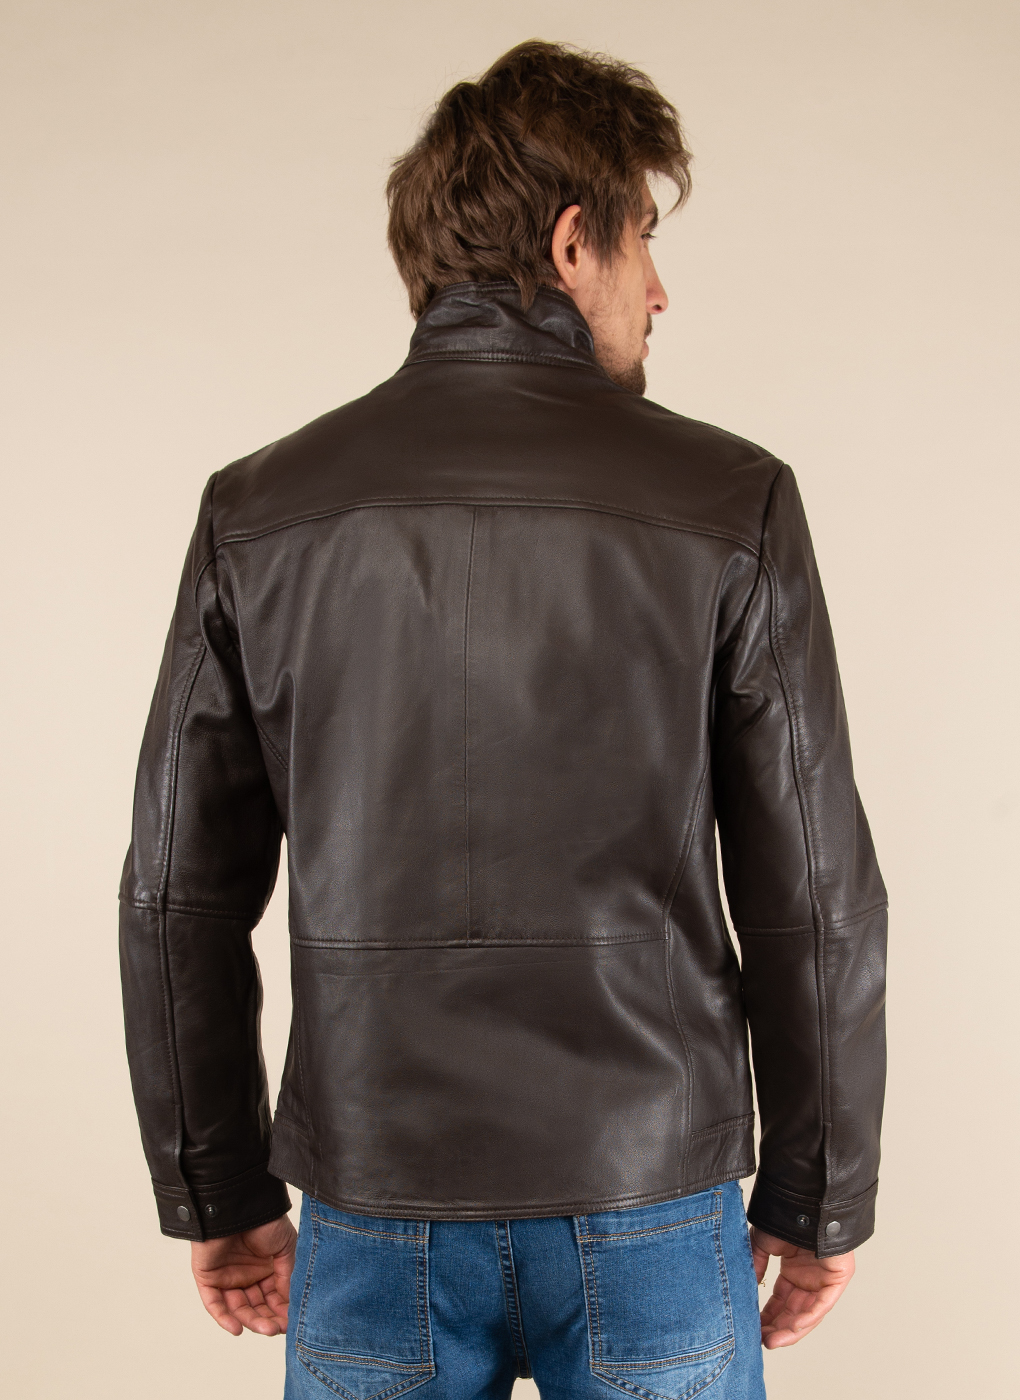 Кожаная куртка мужская Каляев 51795 коричневая 50 RU